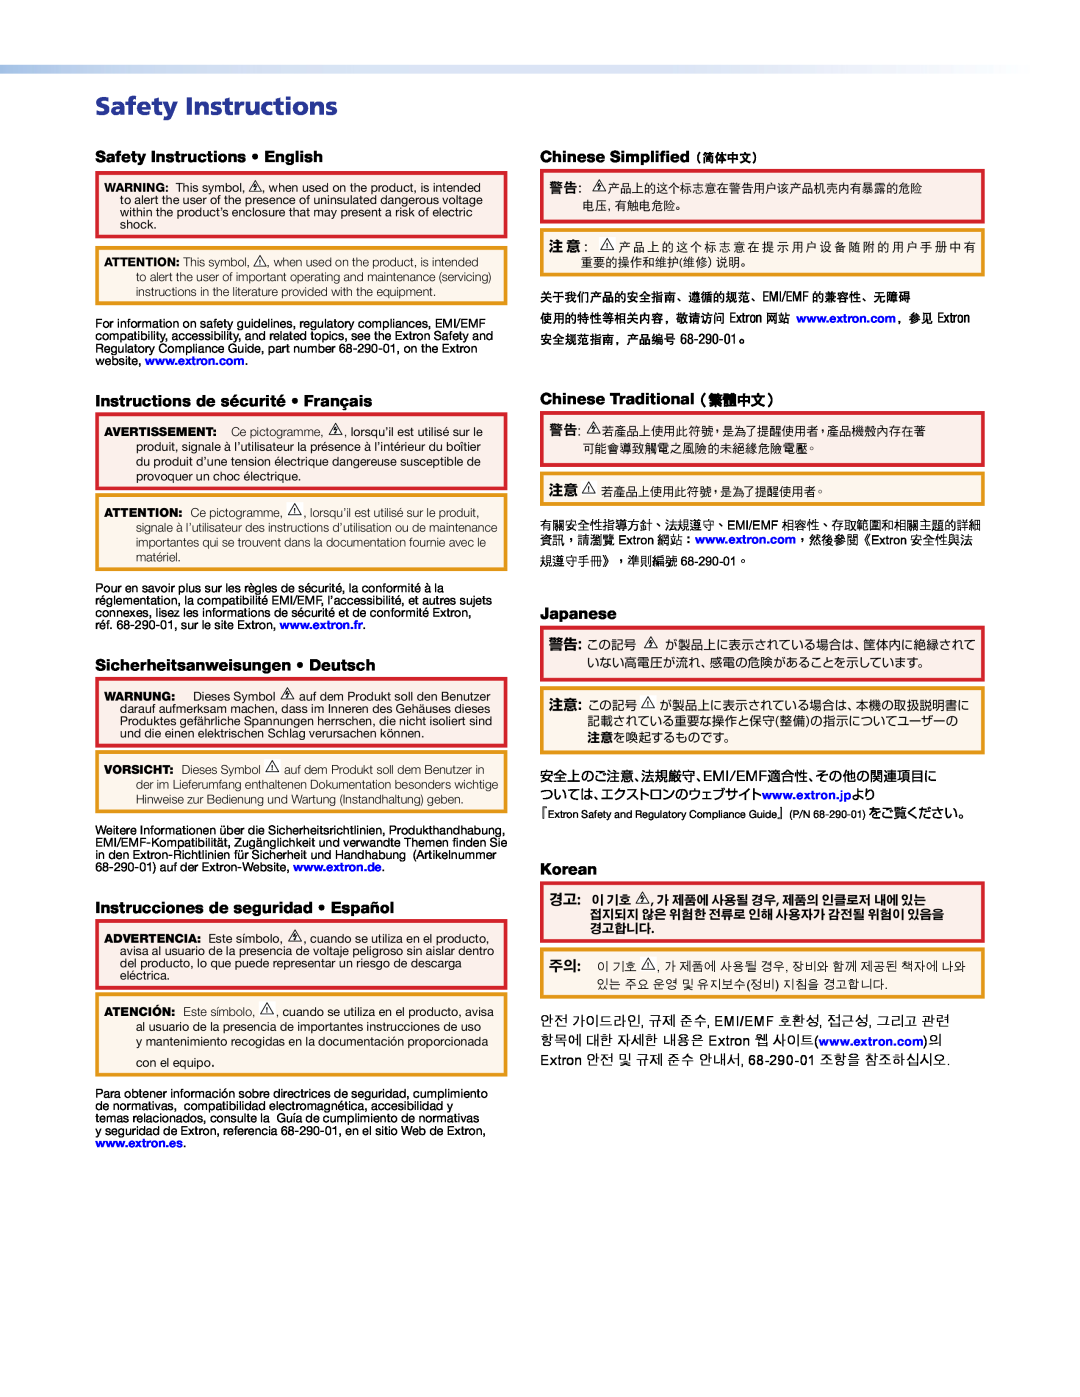 Extron electronic ISM 482 Safety Instructions English, Chinese Simplified（简体中文）, Instructions de sécurité Français 